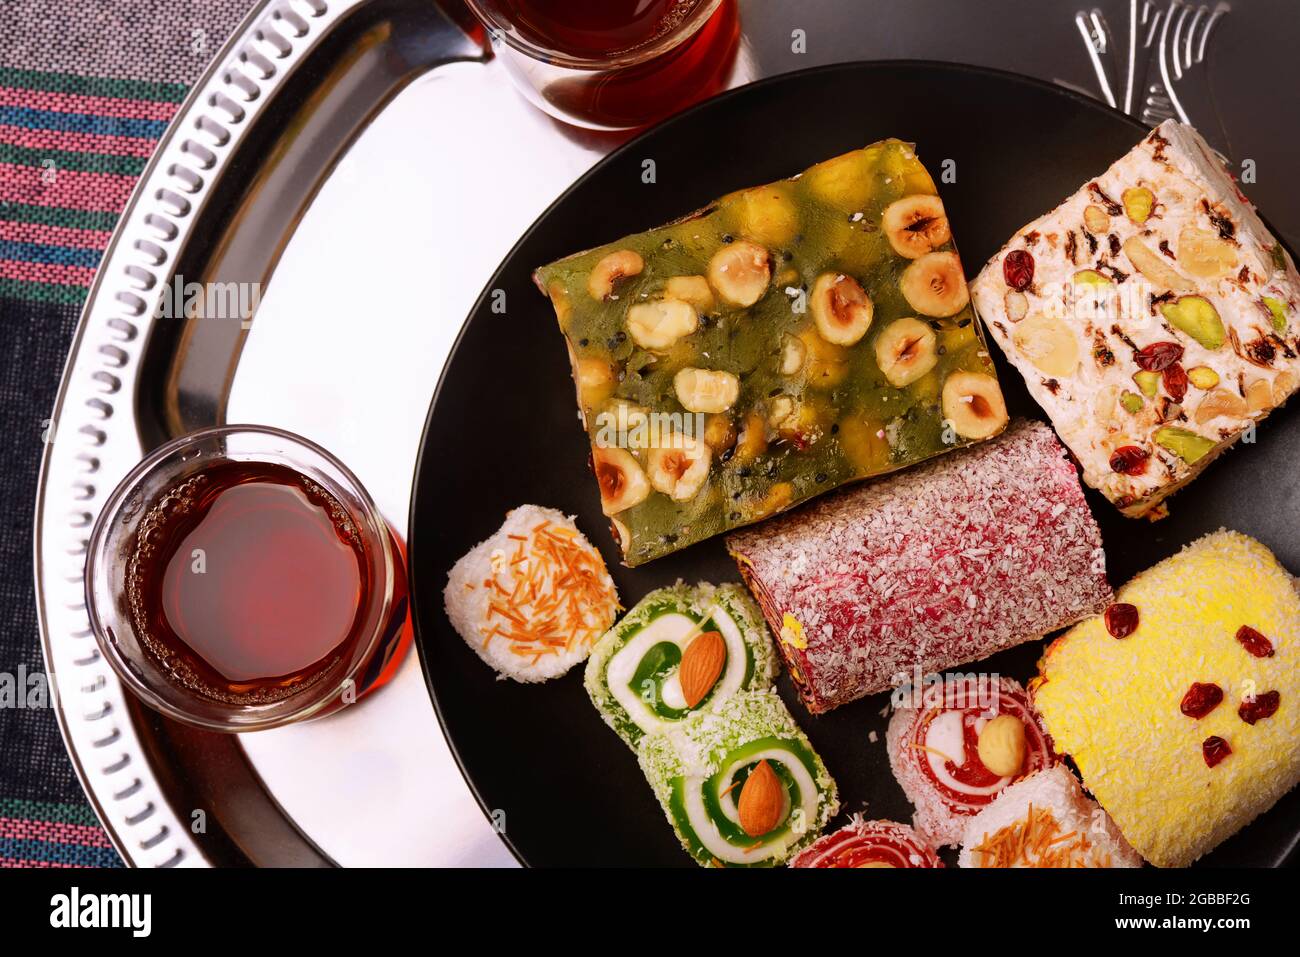 Vue de dessus de divers délices turcs traditionnels avec des noix et des verres à thé Banque D'Images